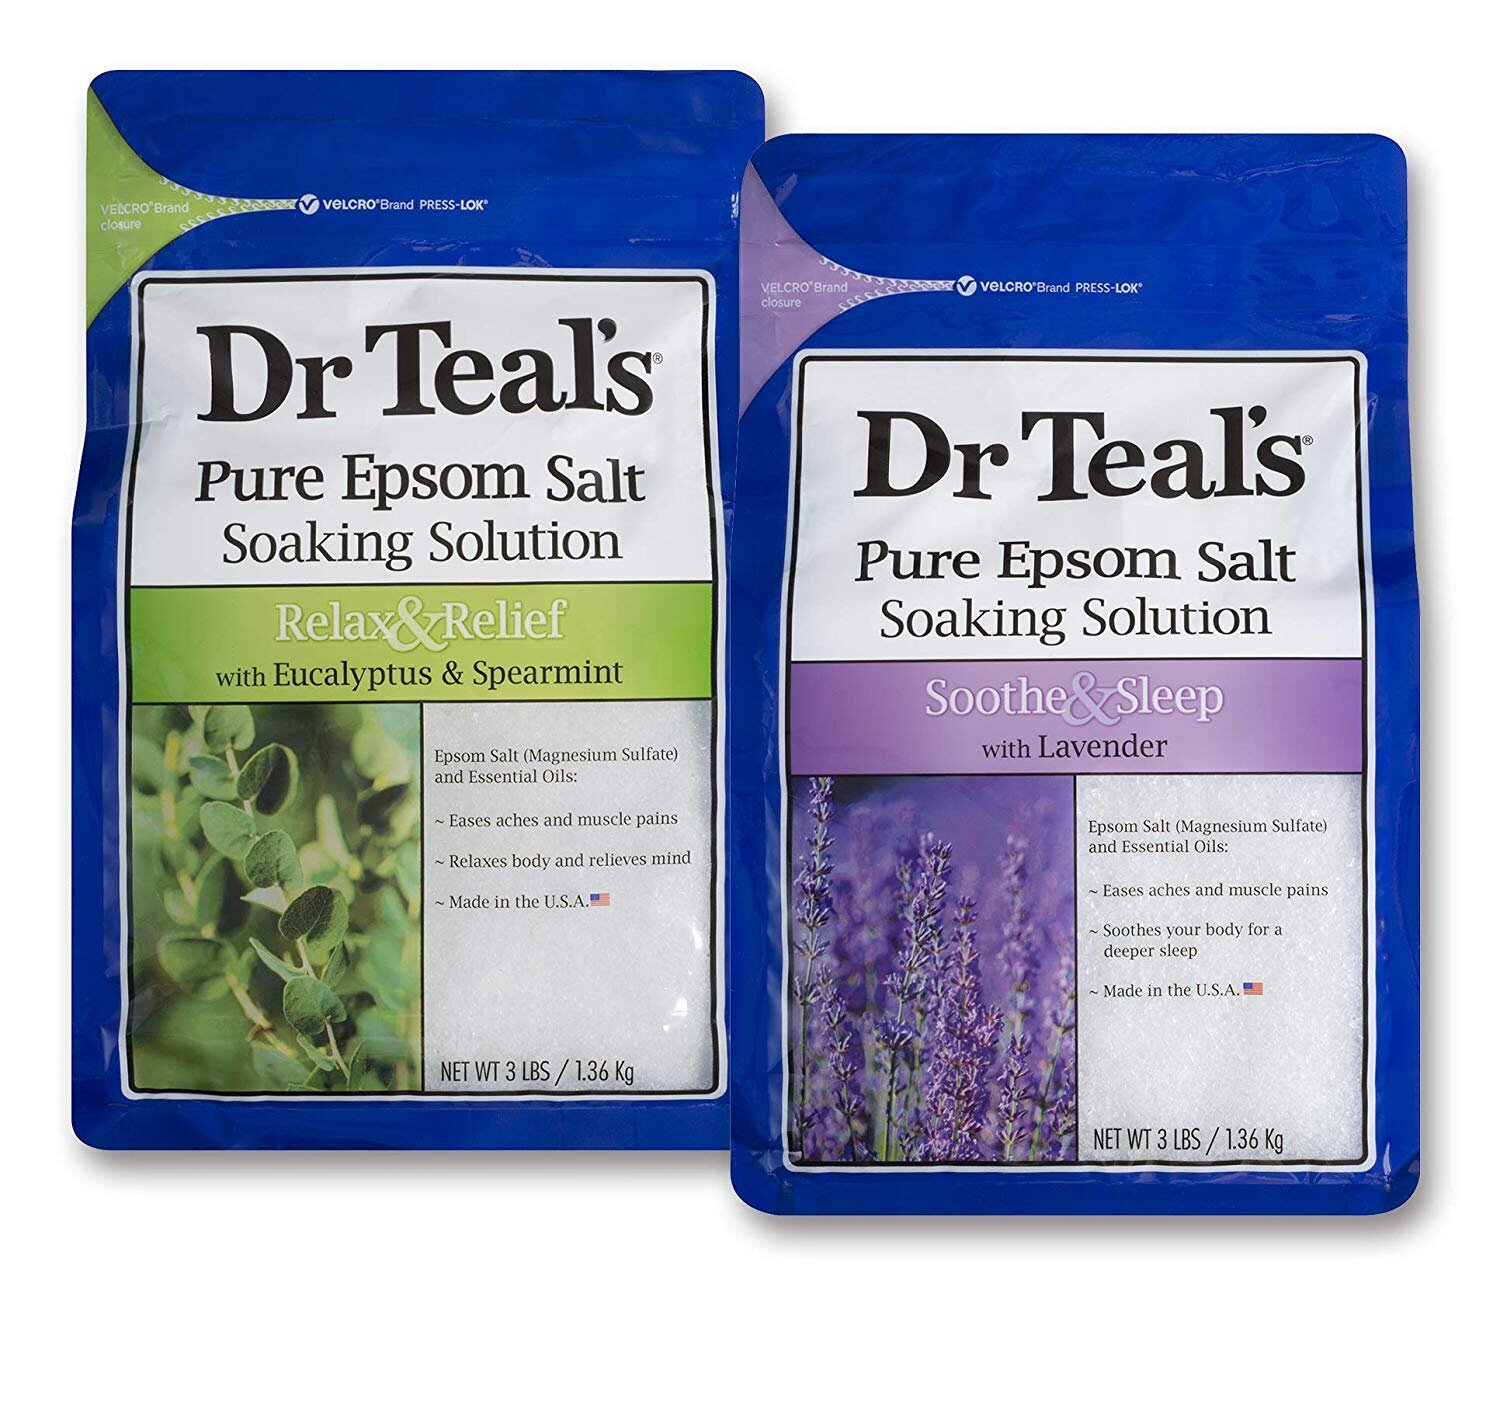  Dr Teal's Epsom Salt Bath Soaking Solution